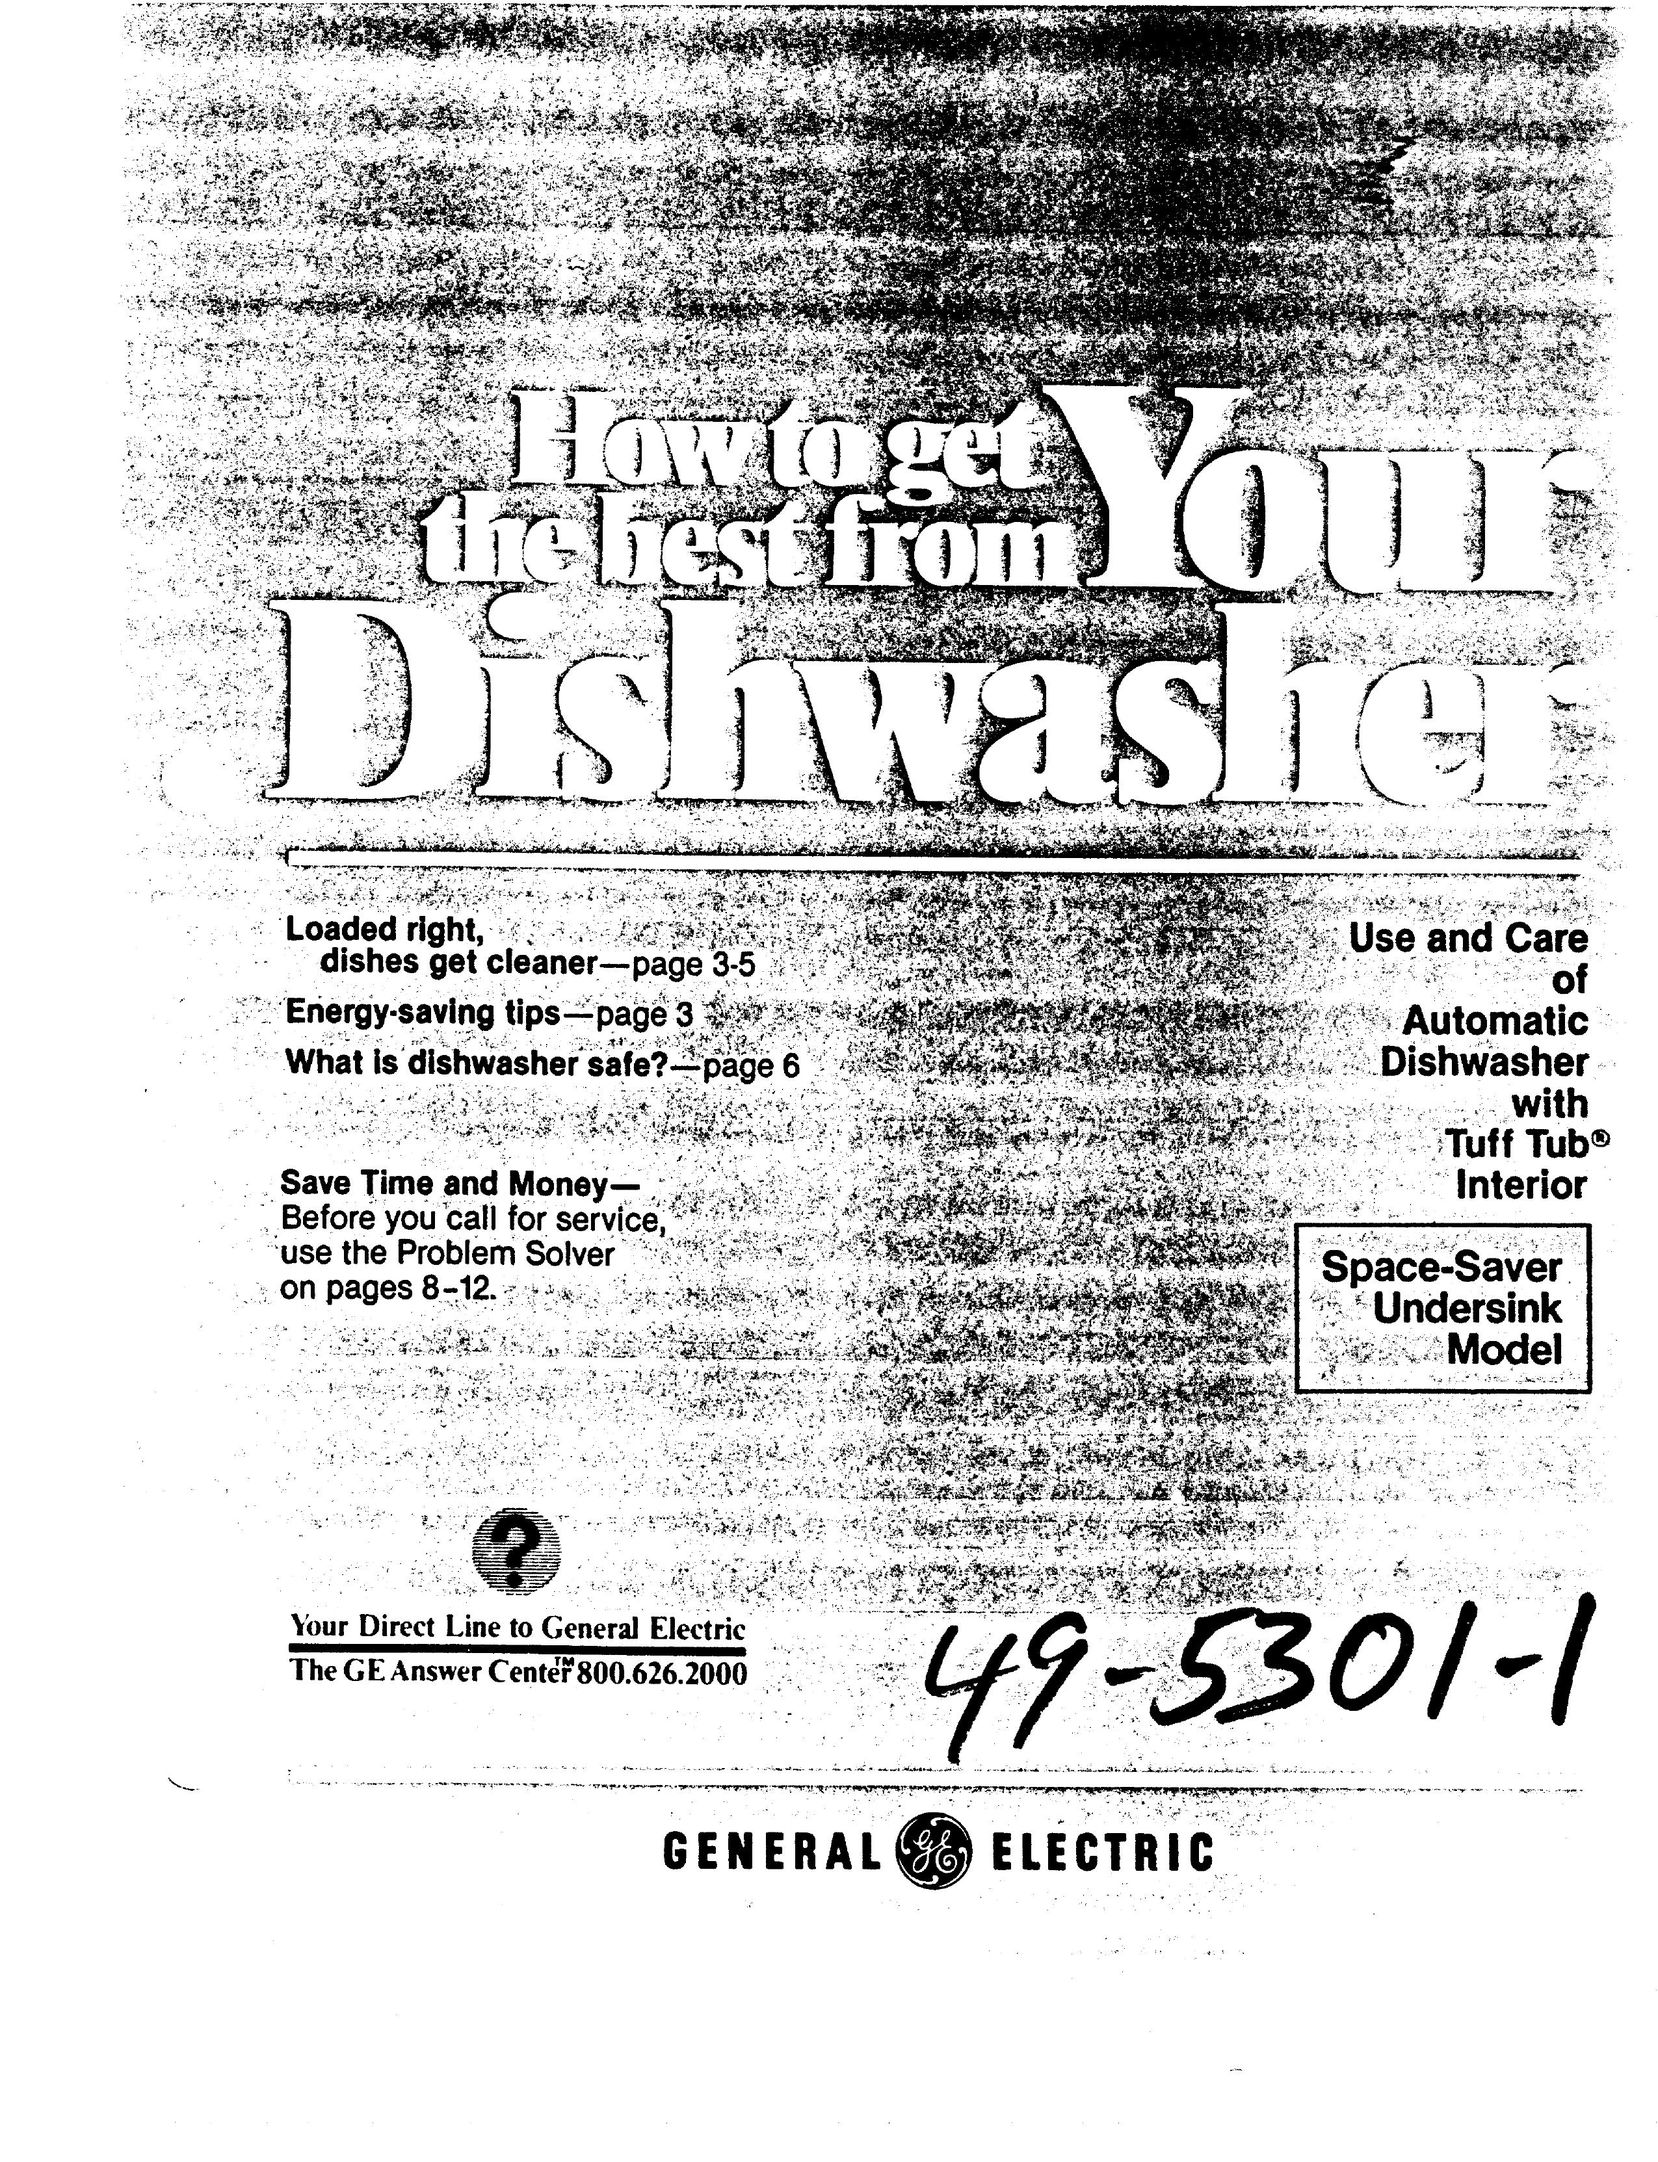 GE 49-5301-1 Dishwasher User Manual